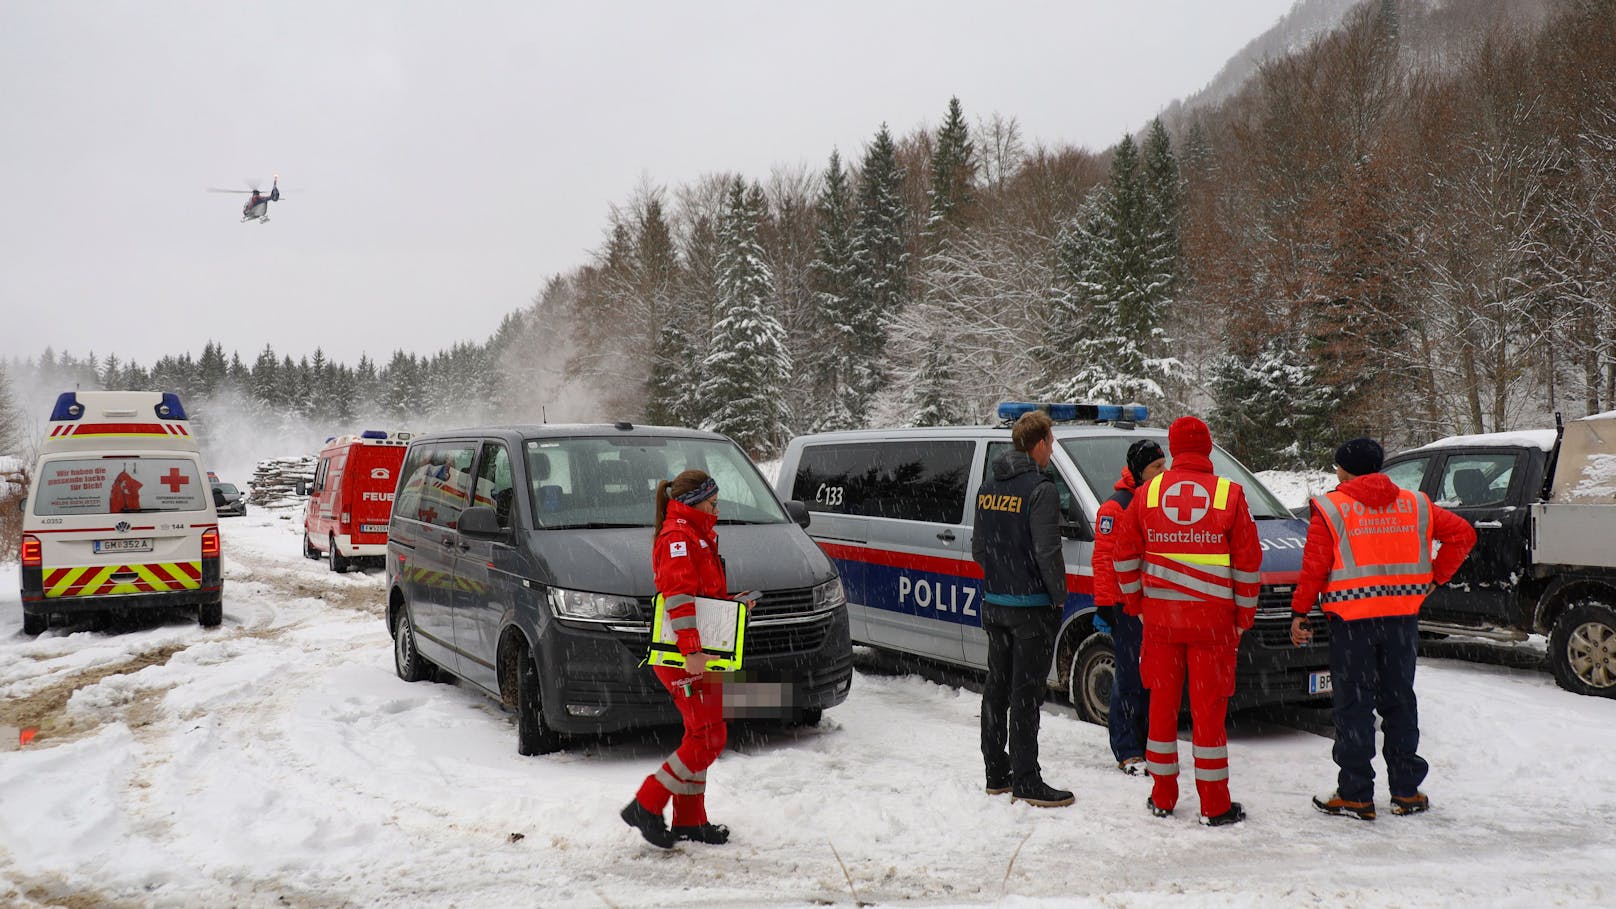 Kleinflugzeug abgestürzt – vier Tote im Schnee gefunden